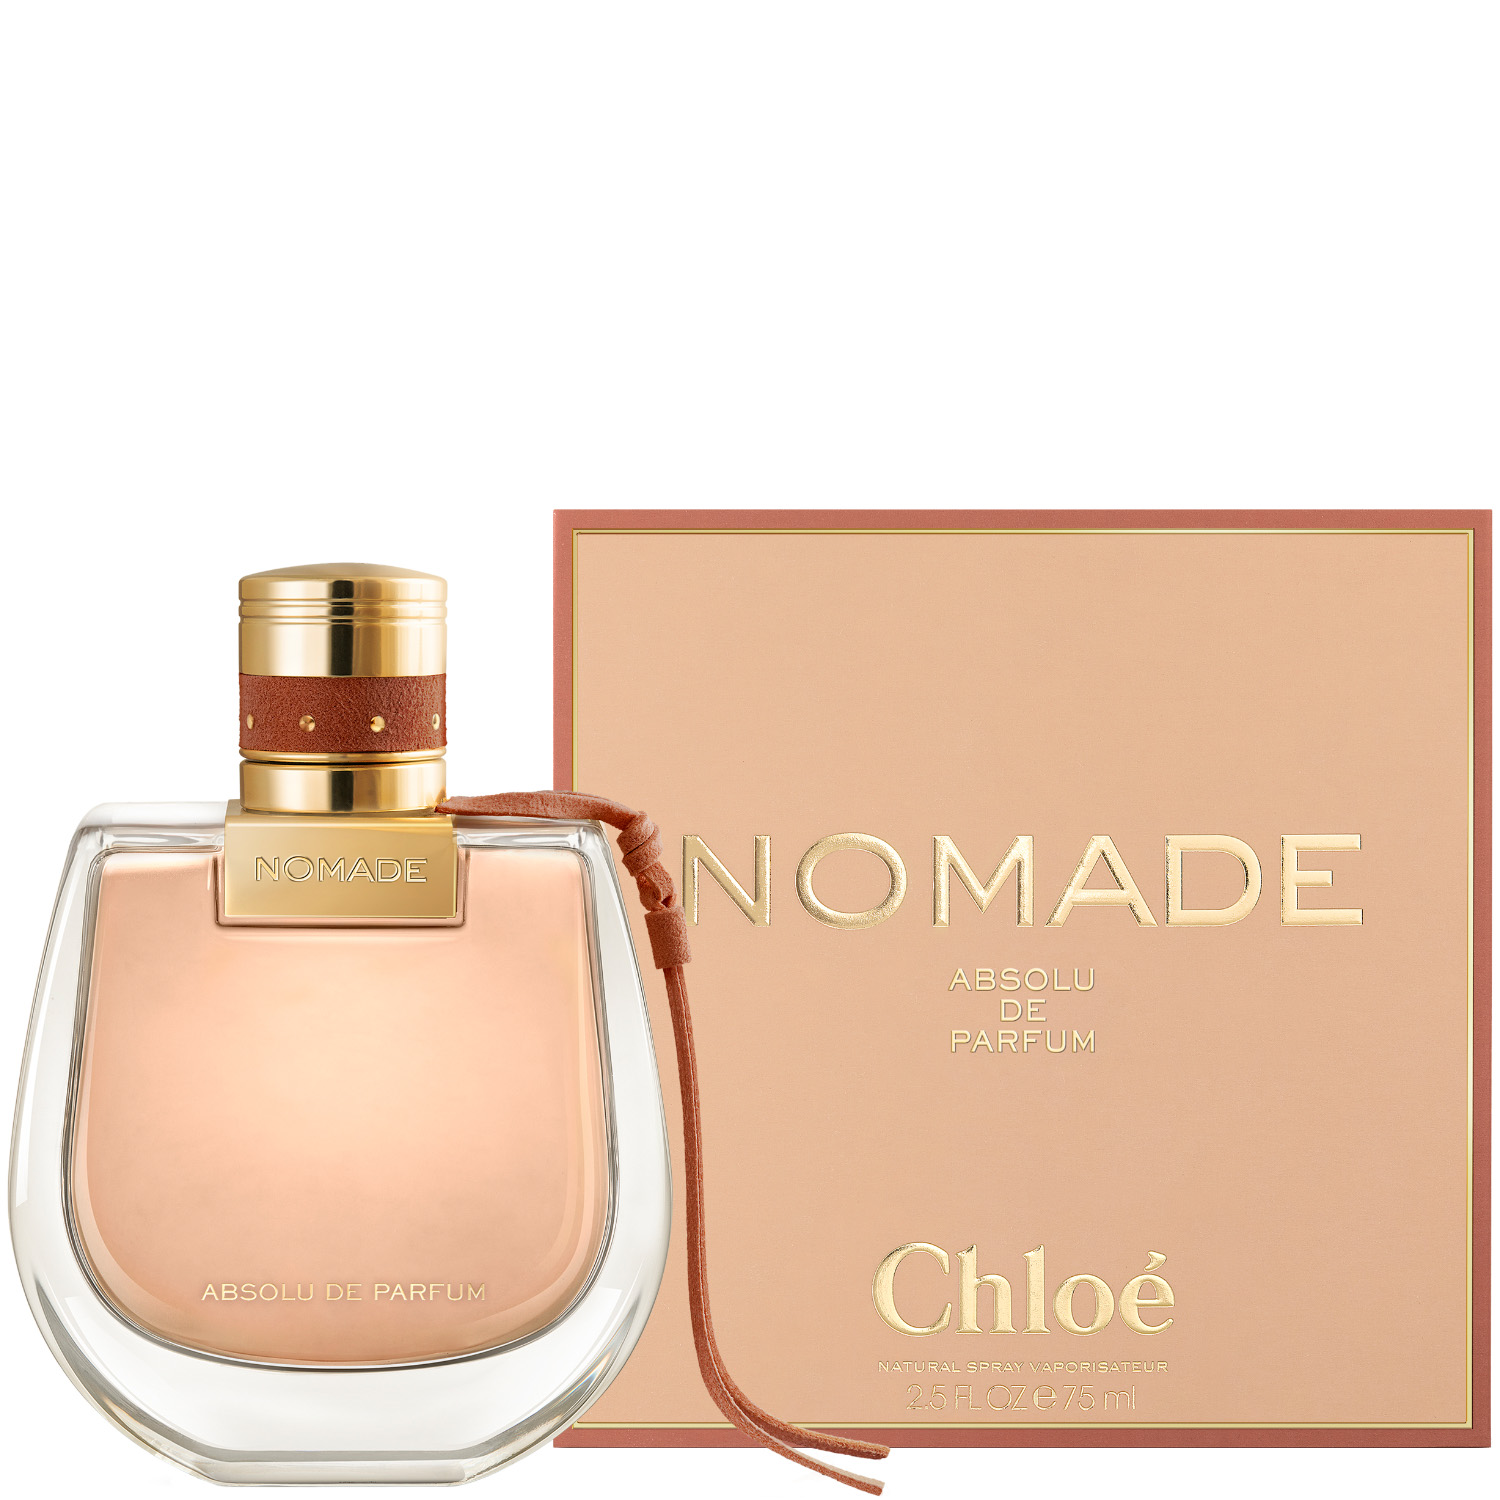 Chloé Nomade Absolue de Parfum Eau de Parfum 75ml